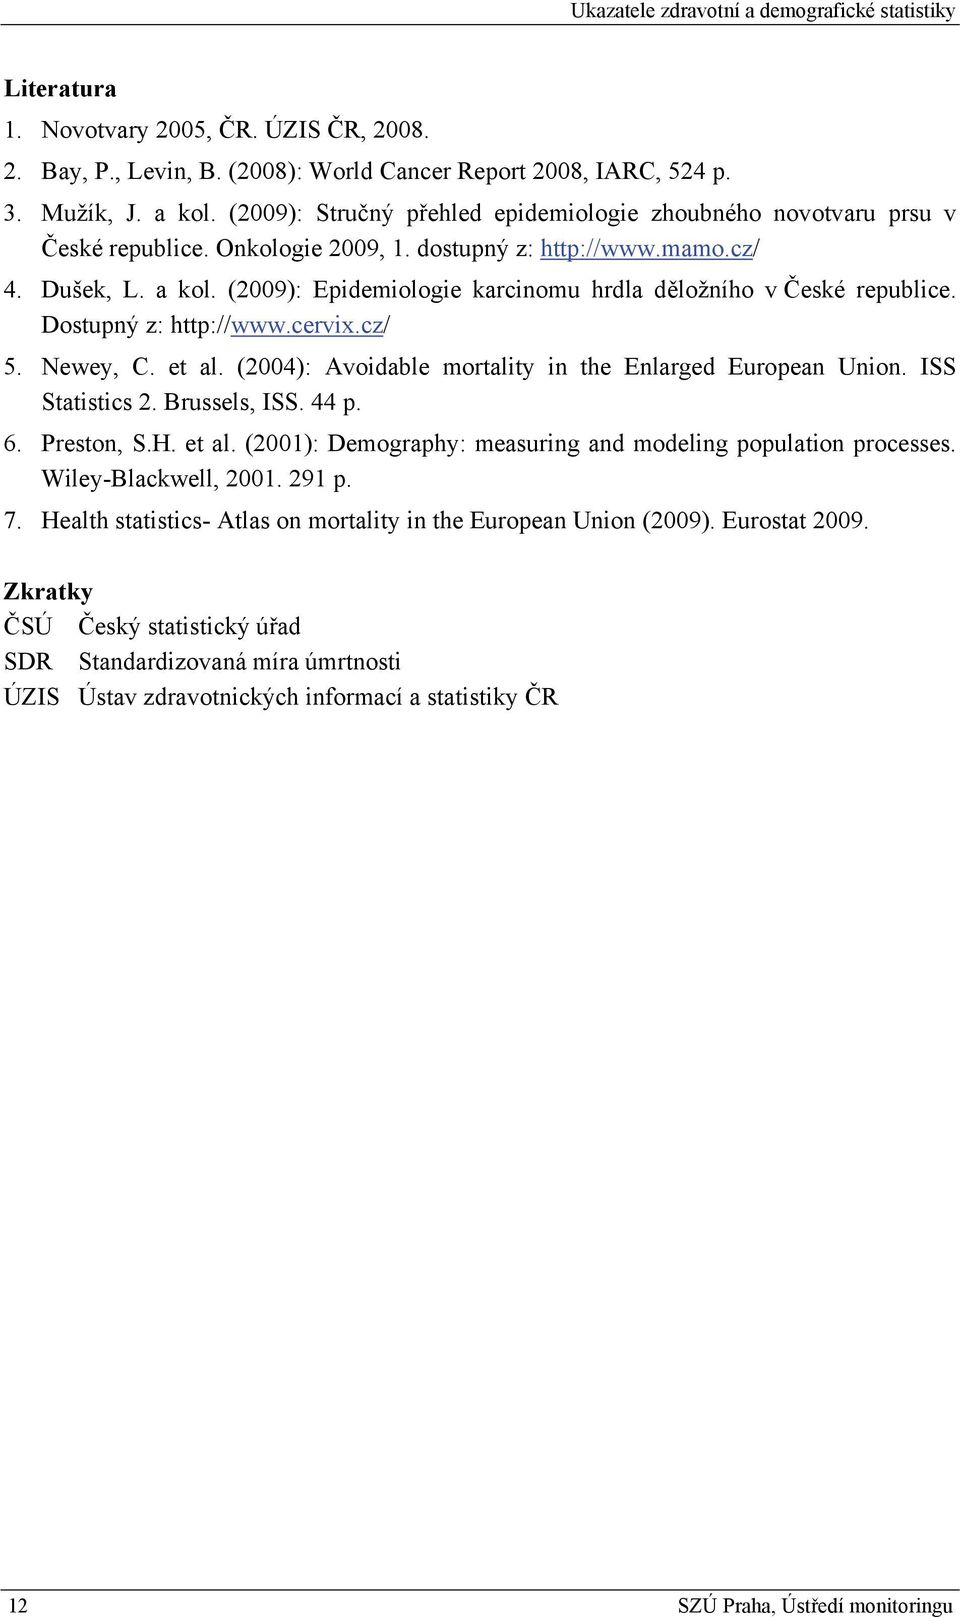 (2009): Epidemiologie karcinomu hrdla děložního v České republice. Dostupný z: http://www.cervix.cz/ 5. Newey, C. et al. (2004): Avoidable mortality in the Enlarged European Union. ISS Statistics 2.